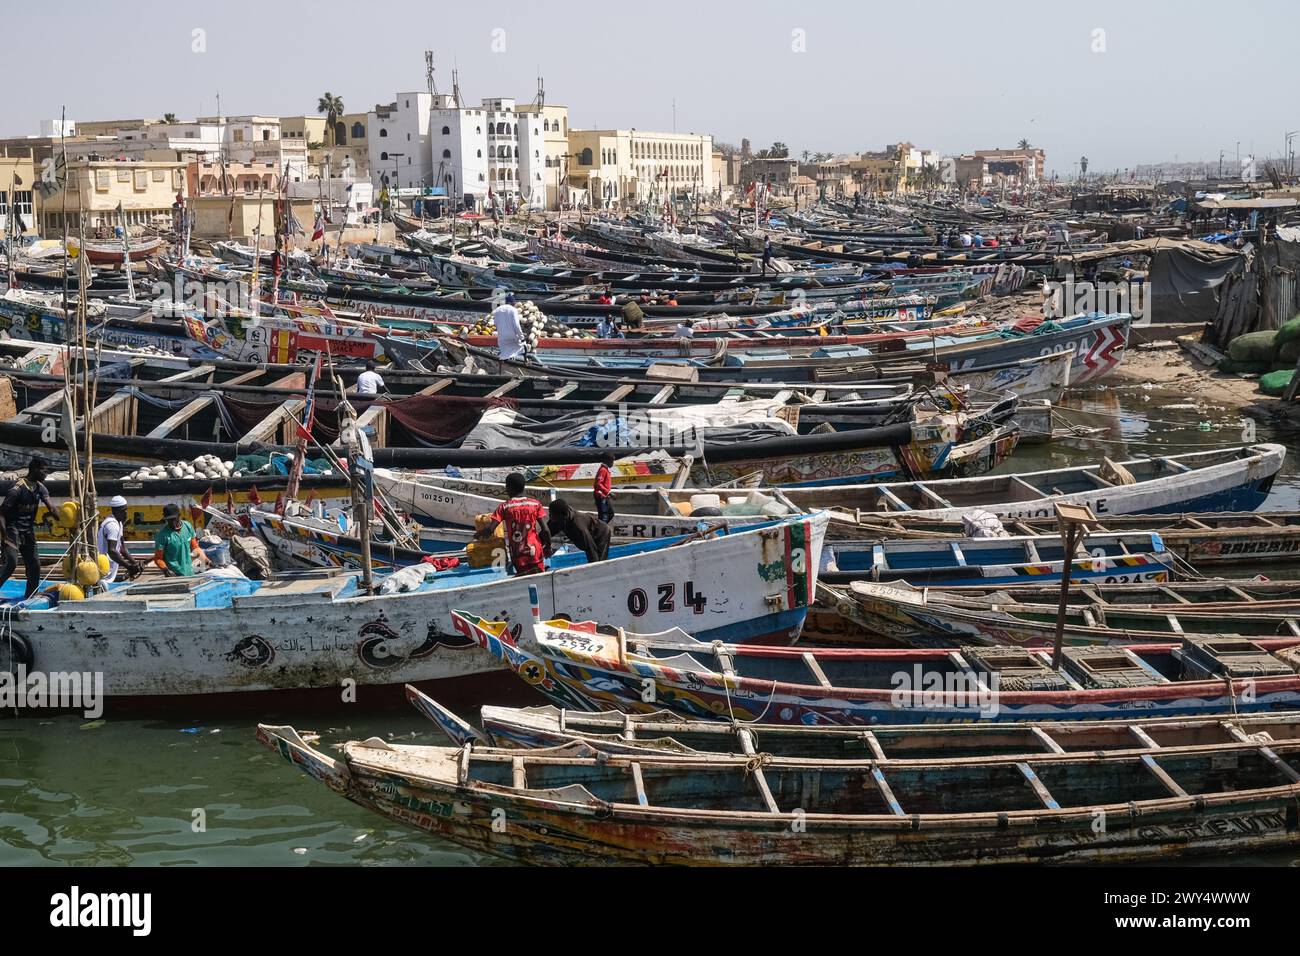 Nicolas Remene / Le Pictorium - Viertel Guet Ndar in Saint-Louis, Senegal - 31/03/2024 - Senegal / Saint-Louis / Saint-Louis - Fischerboote, eine der wichtigsten wirtschaftlichen Aktivitäten in Saint-Louis, Senegal, am 31. März 2024. Quet Ndar ist ein Fischerviertel in Saint-Louis, Senegal, das auch für seine höchste Bevölkerungsdichte der Welt bekannt ist. Es liegt an der Langue de Barbarie, die seit Jahren mit Küstenerosion konfrontiert ist. Heute ist der Bezirk von der starken Schwelle bedroht, die sein Ufer zerstört hat Stockfoto